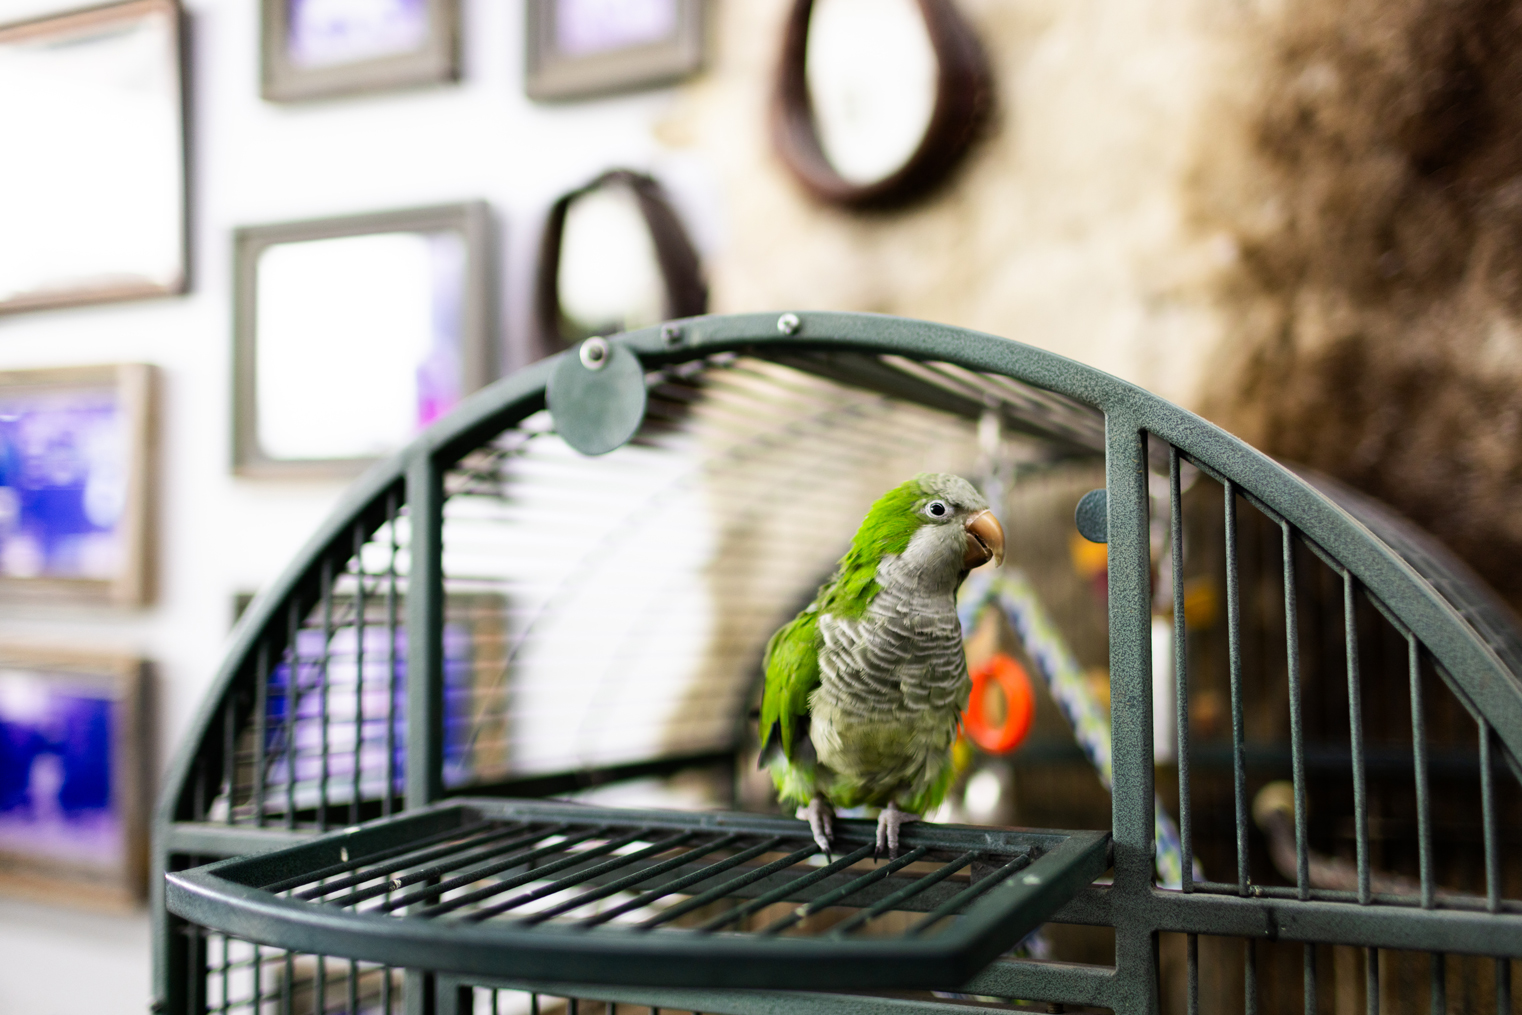 Pablo the Quaker parrot that lives in Walt’s Show Shop ventures outside the birdcage